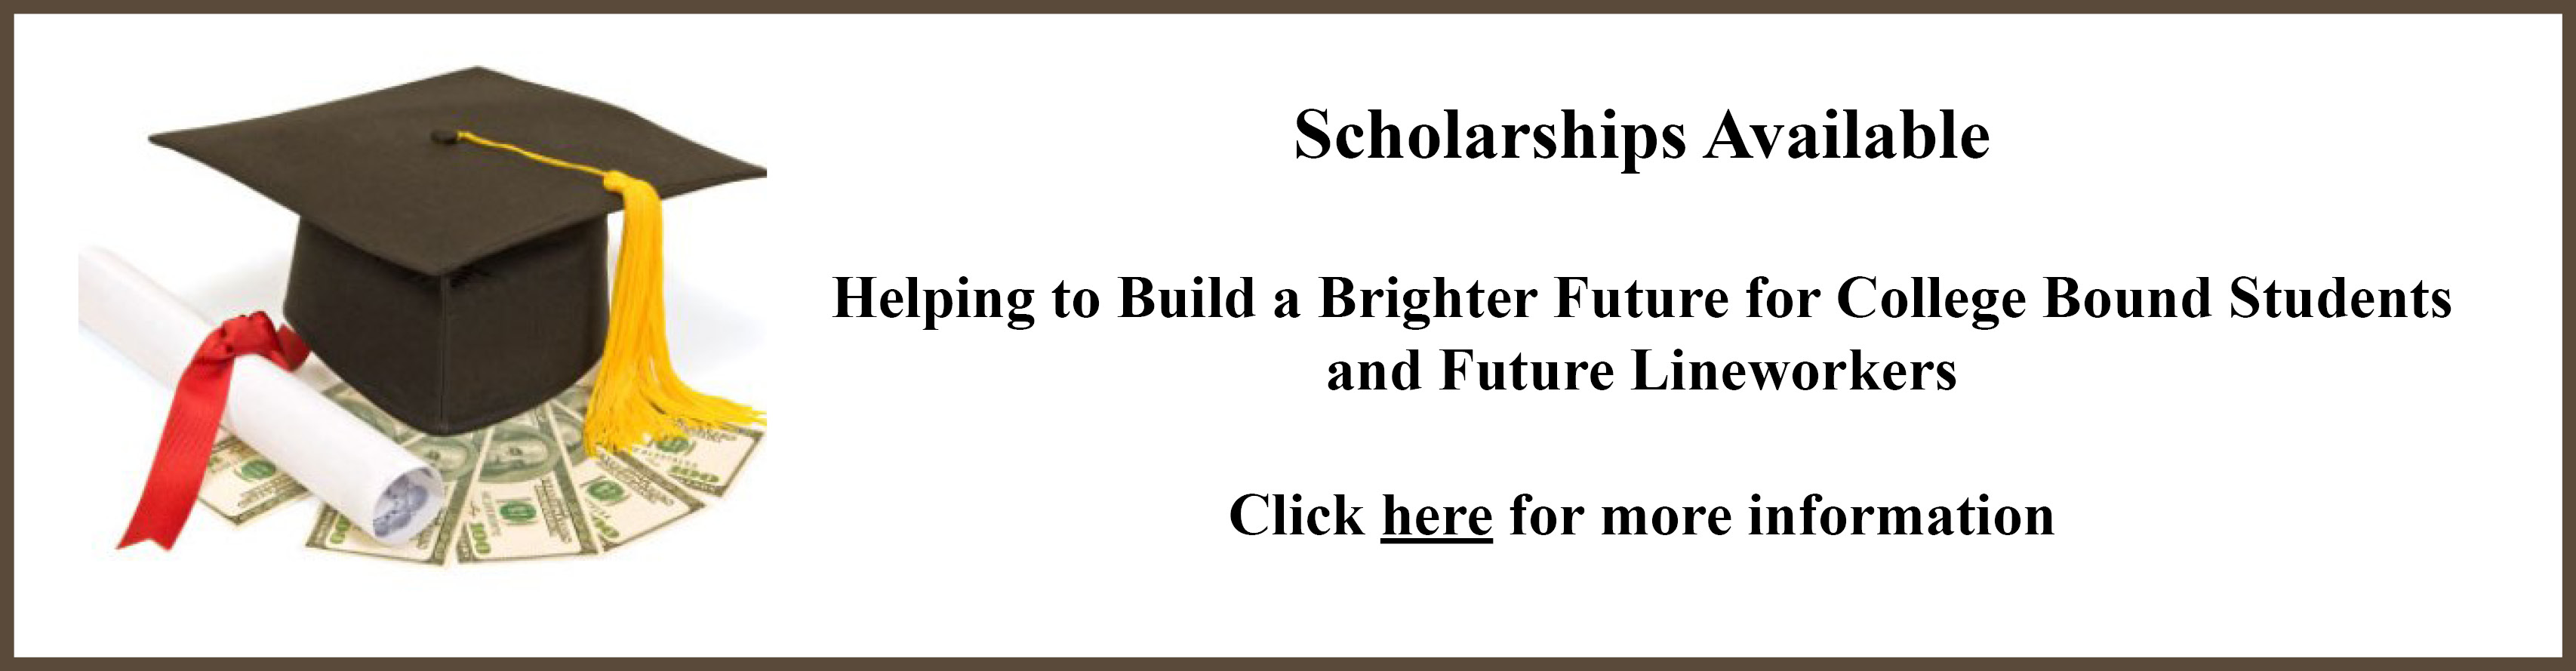 Scholarship opportunities